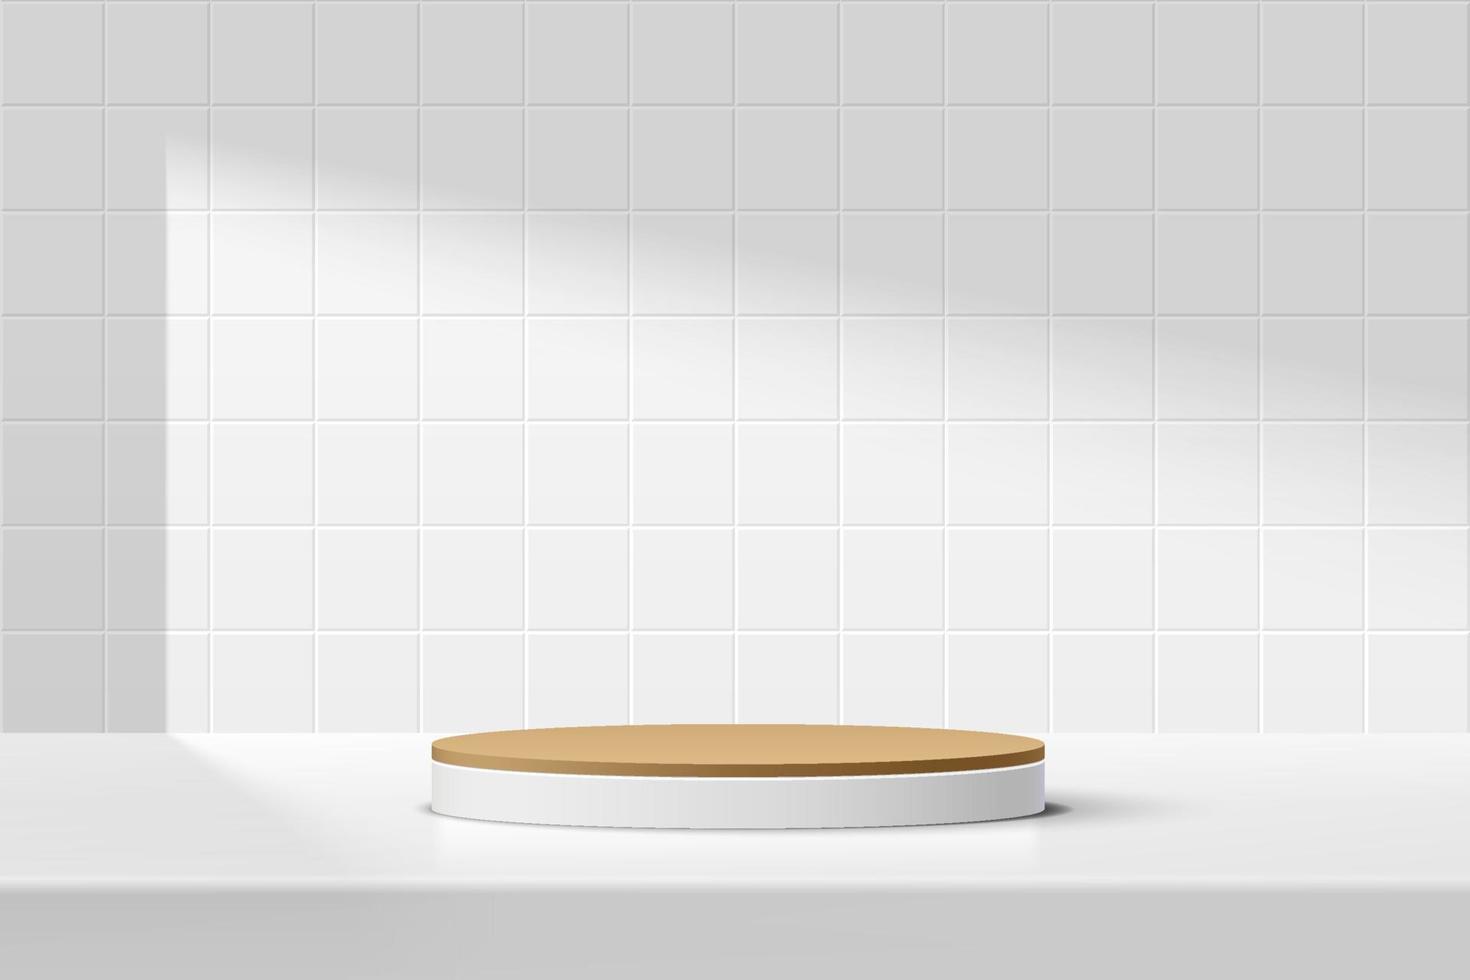 abstrakt 3d vit, brun cylinder piedestal podium på bordet med vit kvadratisk kakel textur vägg scen. vektor rendering minimal geometrisk plattform design i skuggan för produkt display presentation.